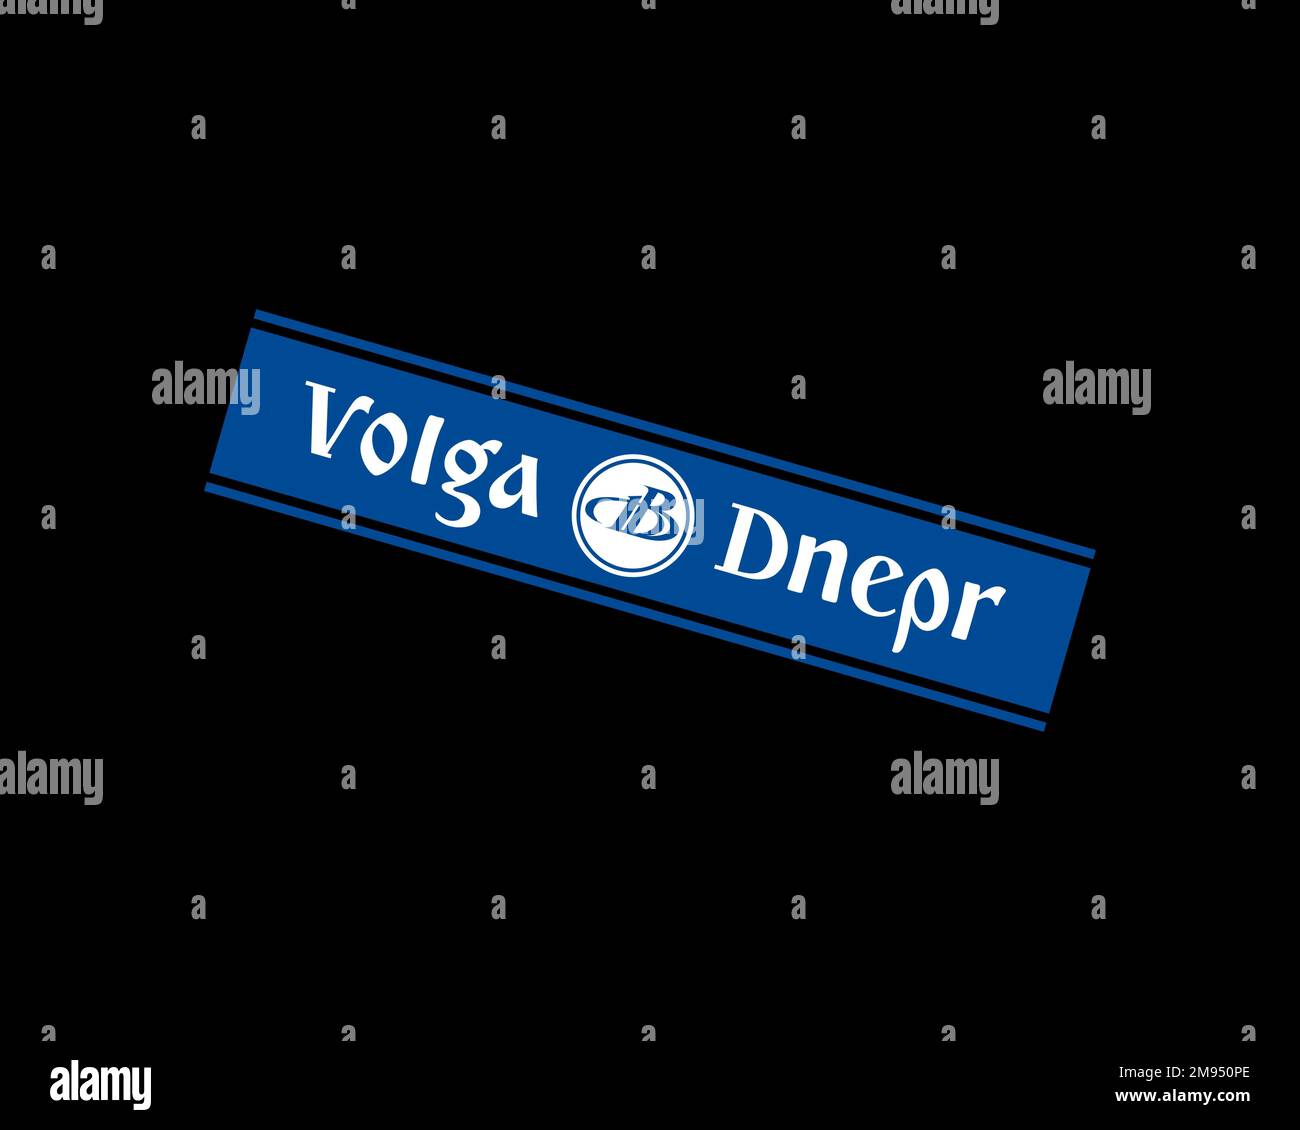 Volga Dnepr Airline, logo pivoté, arrière-plan noir B Banque D'Images